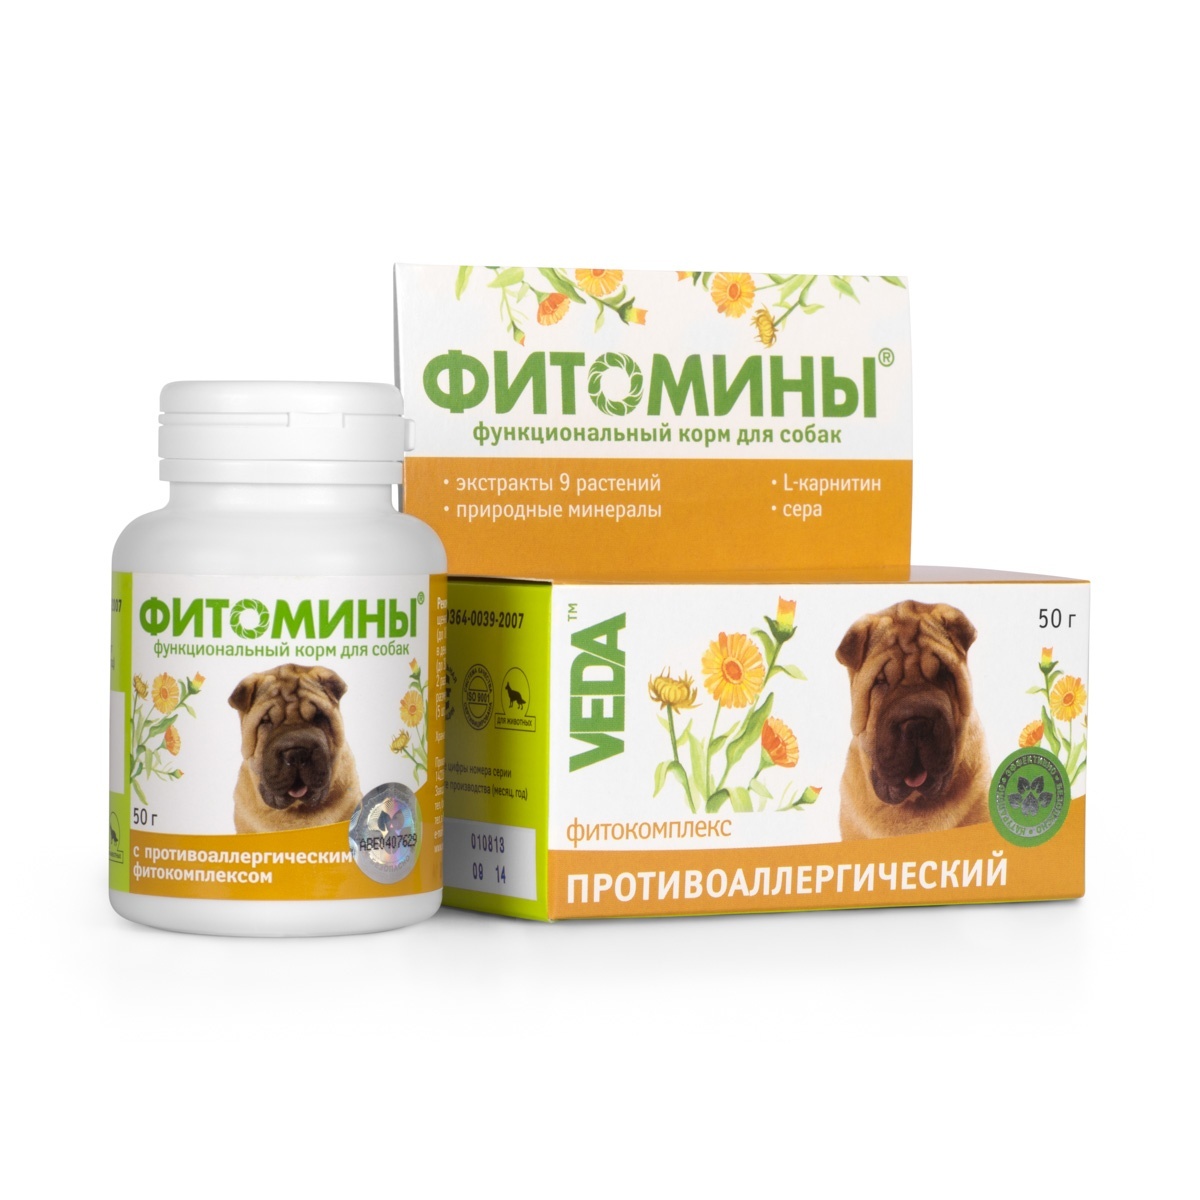 Веда Веда фитомины от аллергии для собак, 100 таб. (50 г) веда фитомины для кастрированых котов 100таб